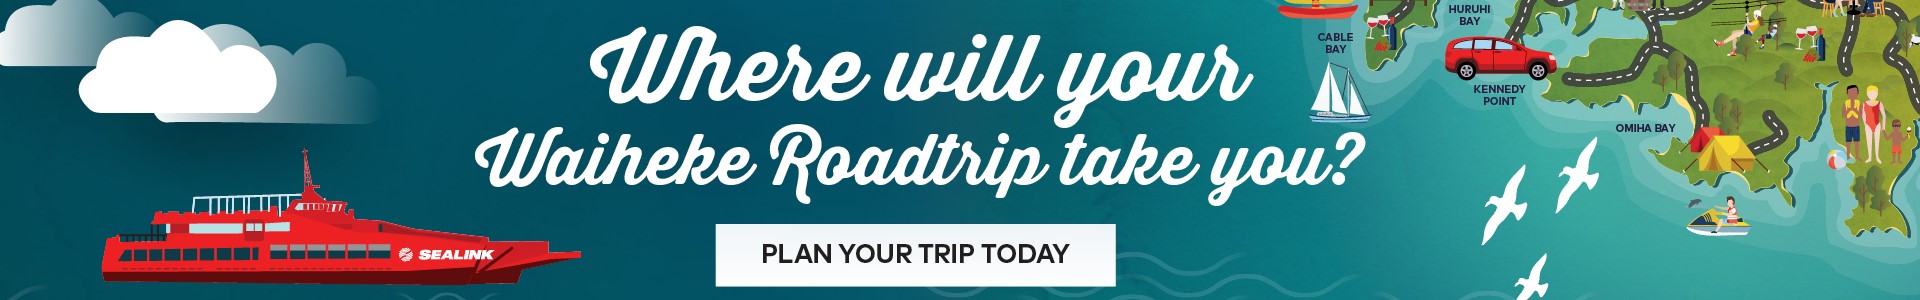 Your Waiheke Road trip starts here